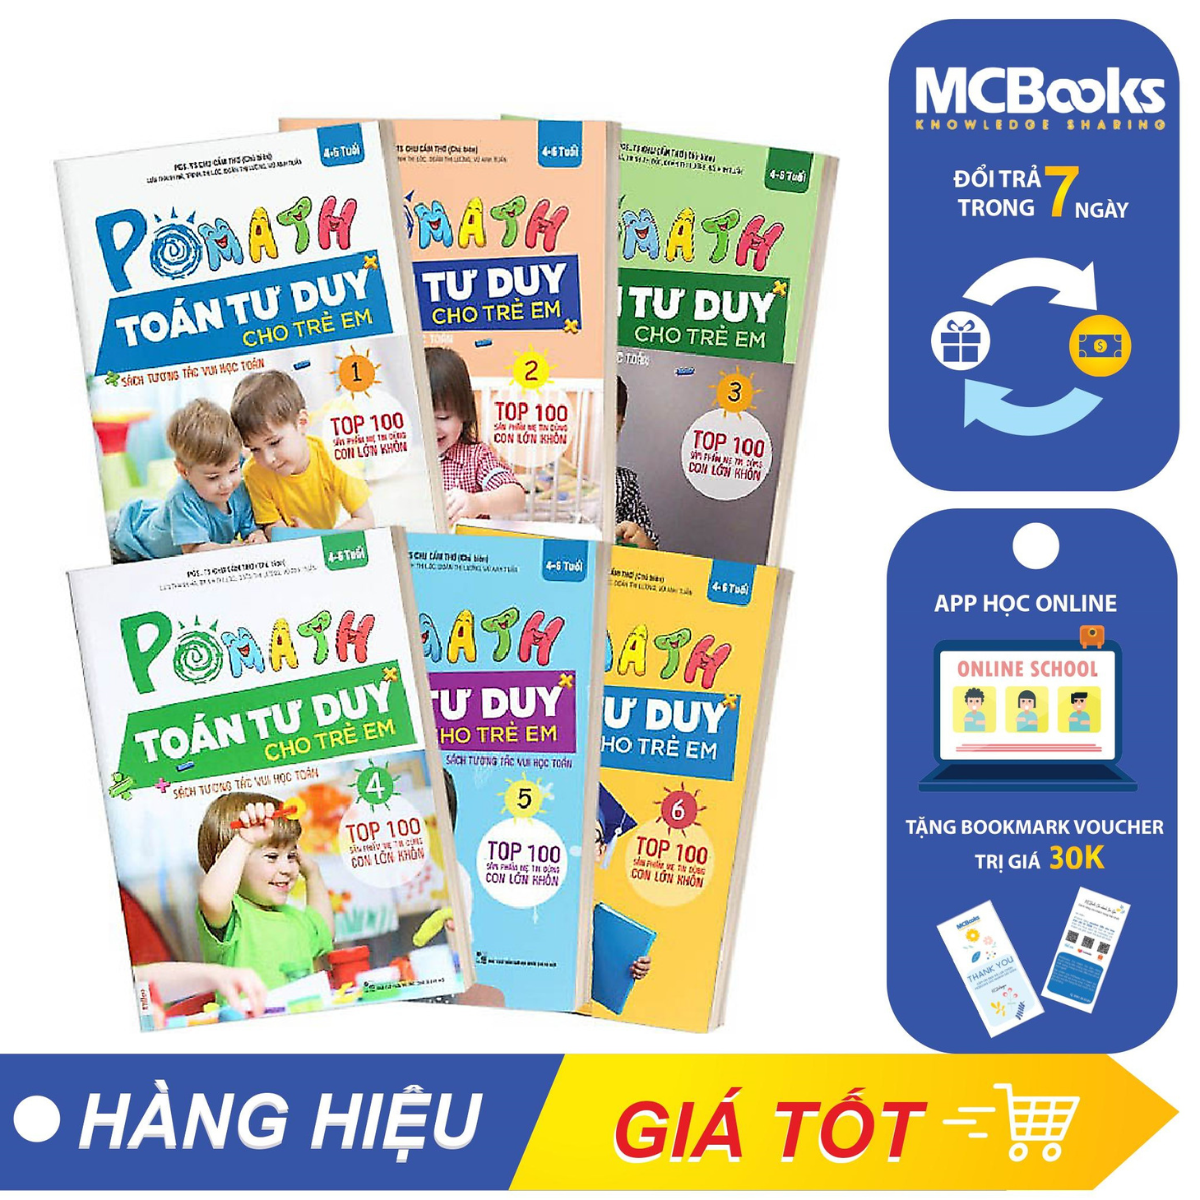 Combo Trọn Bộ Sách PoMath - Toán Tư Duy Cho Trẻ Em 4-6 Tuổi (6 cuốn) tặng kèm bookmark 